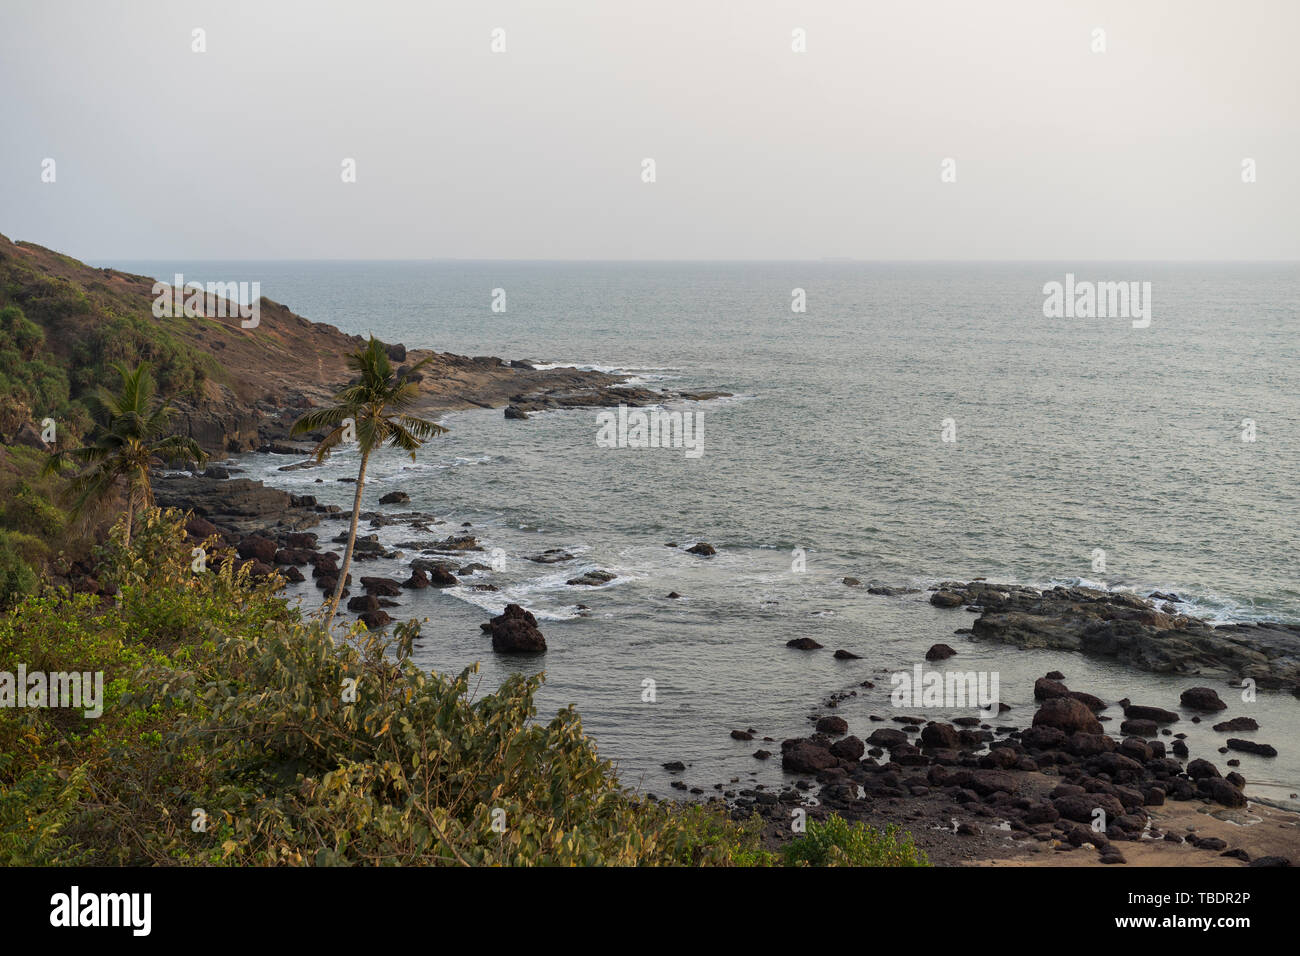 Schöne Anjuna Beach im Norden von Goa, Indien. Beliebte strand ferien Destination in Goa. Stockfoto